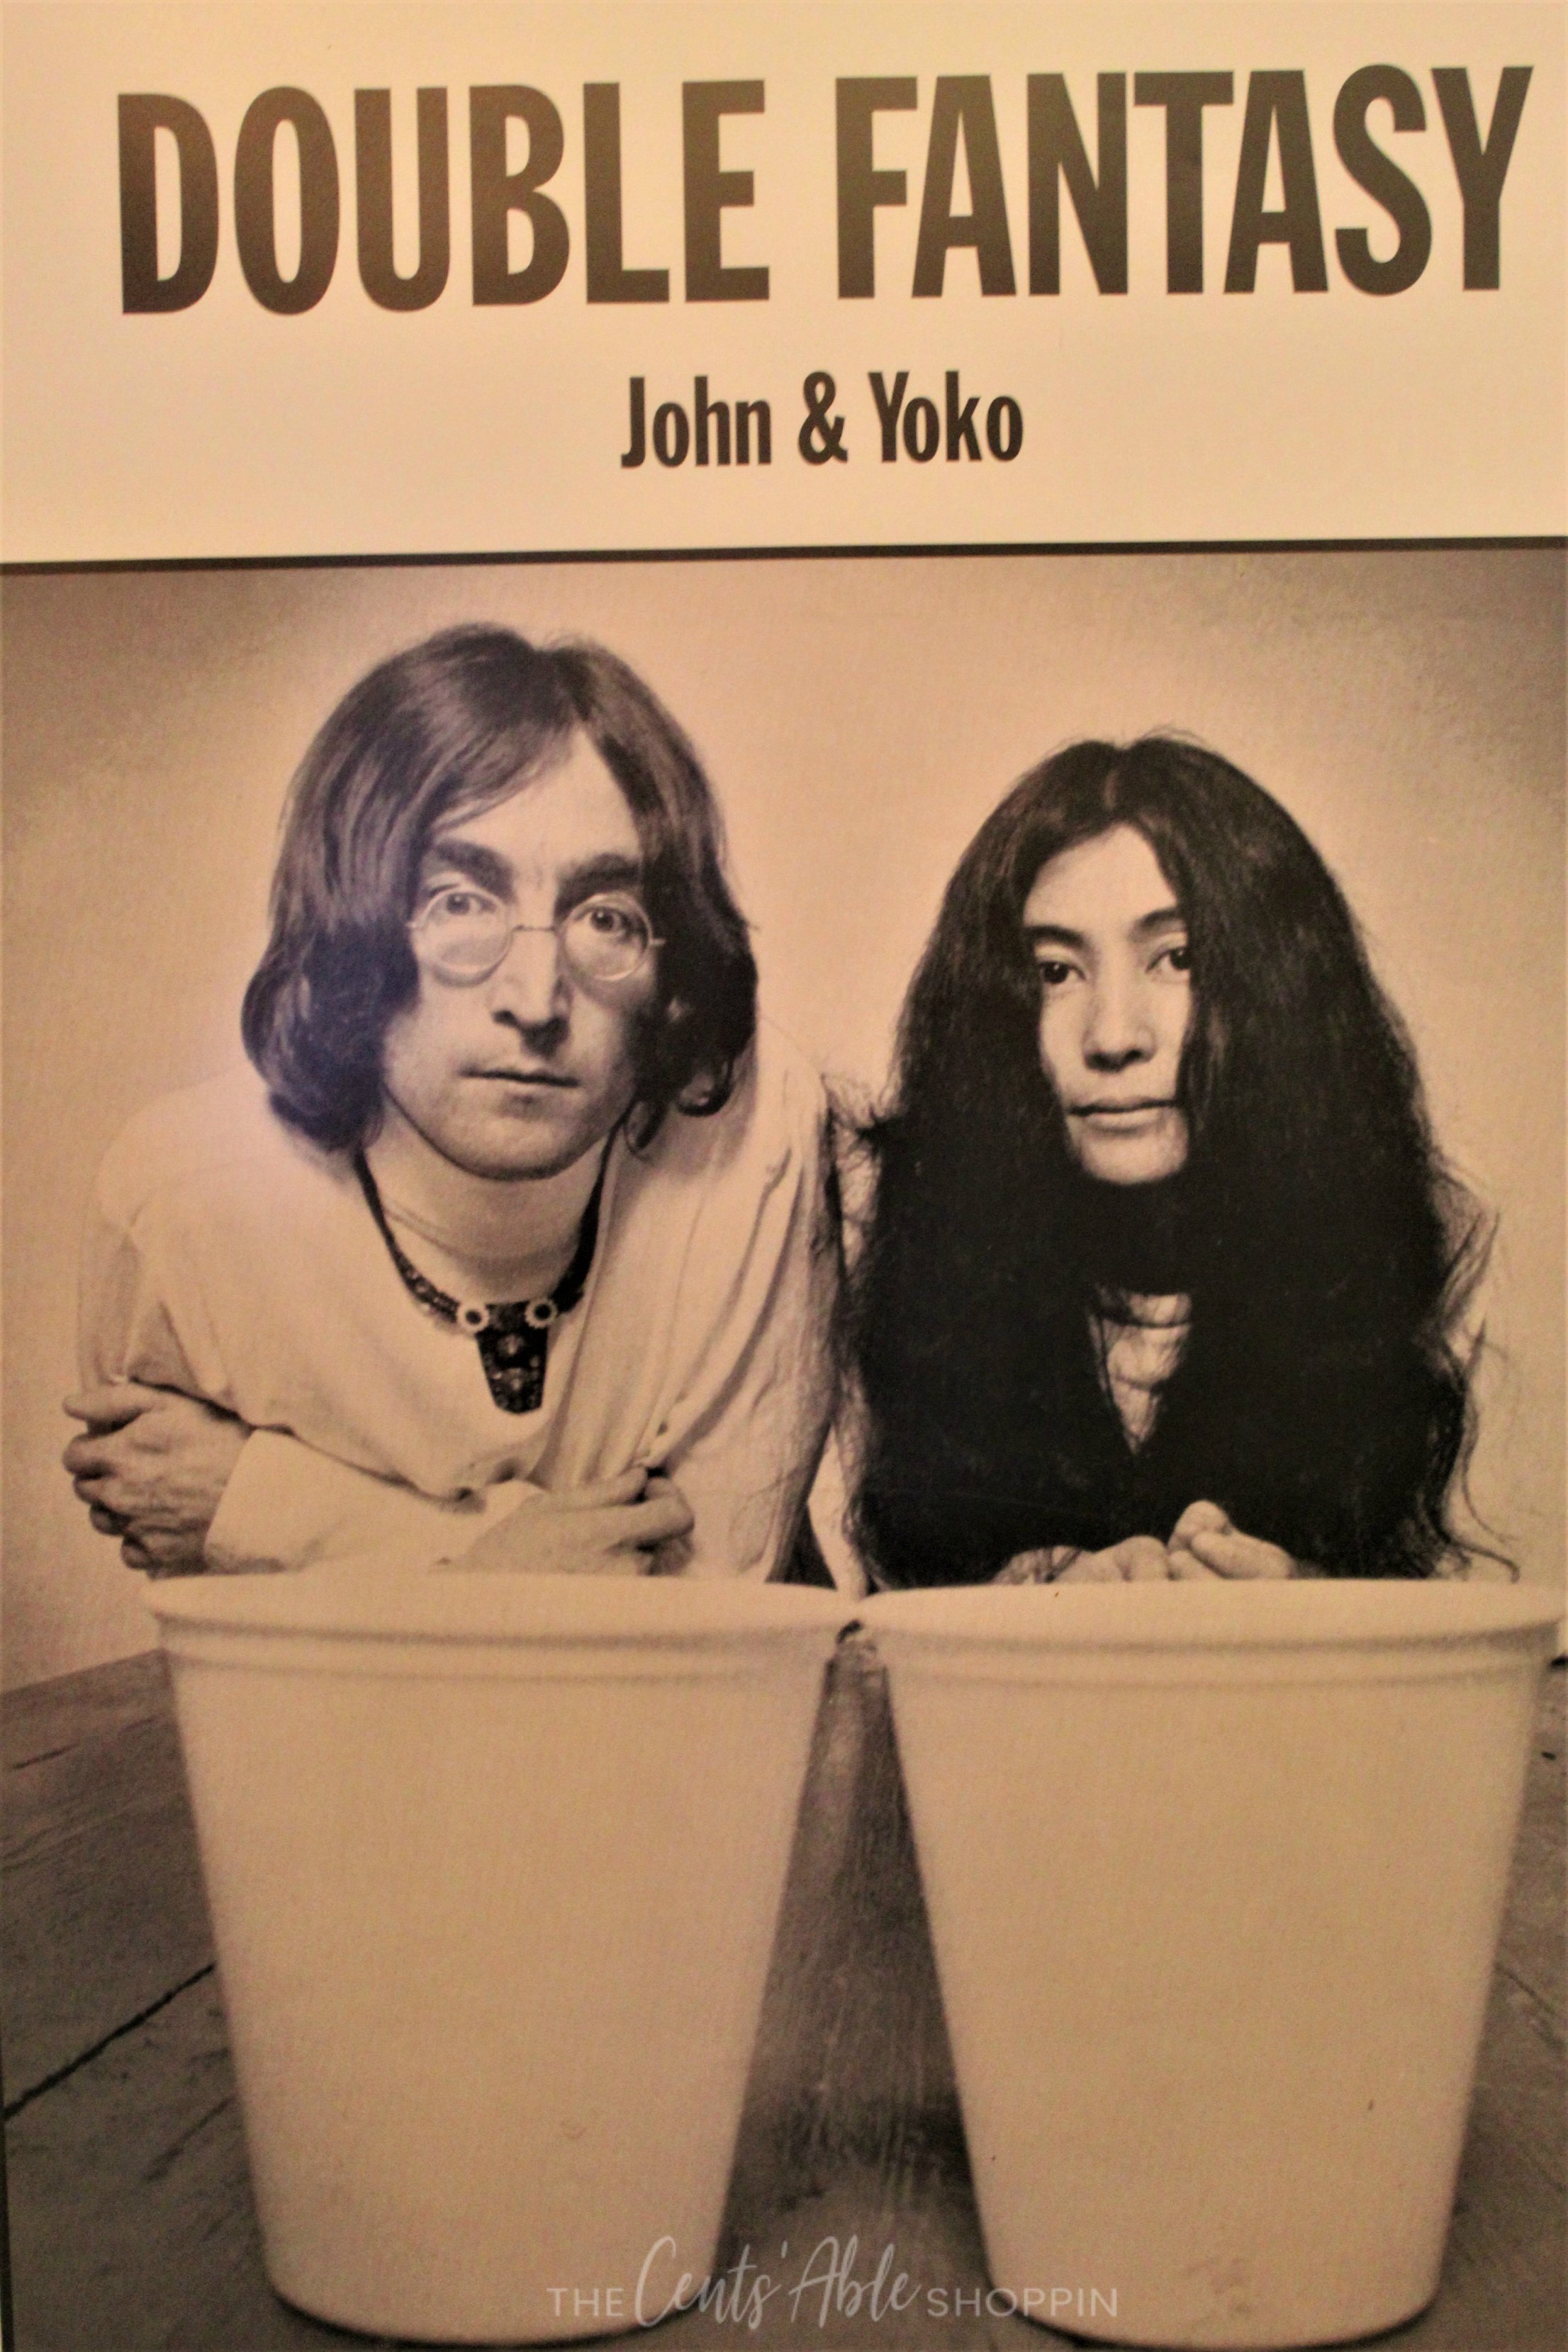 John and Yoko, Liverpool, England